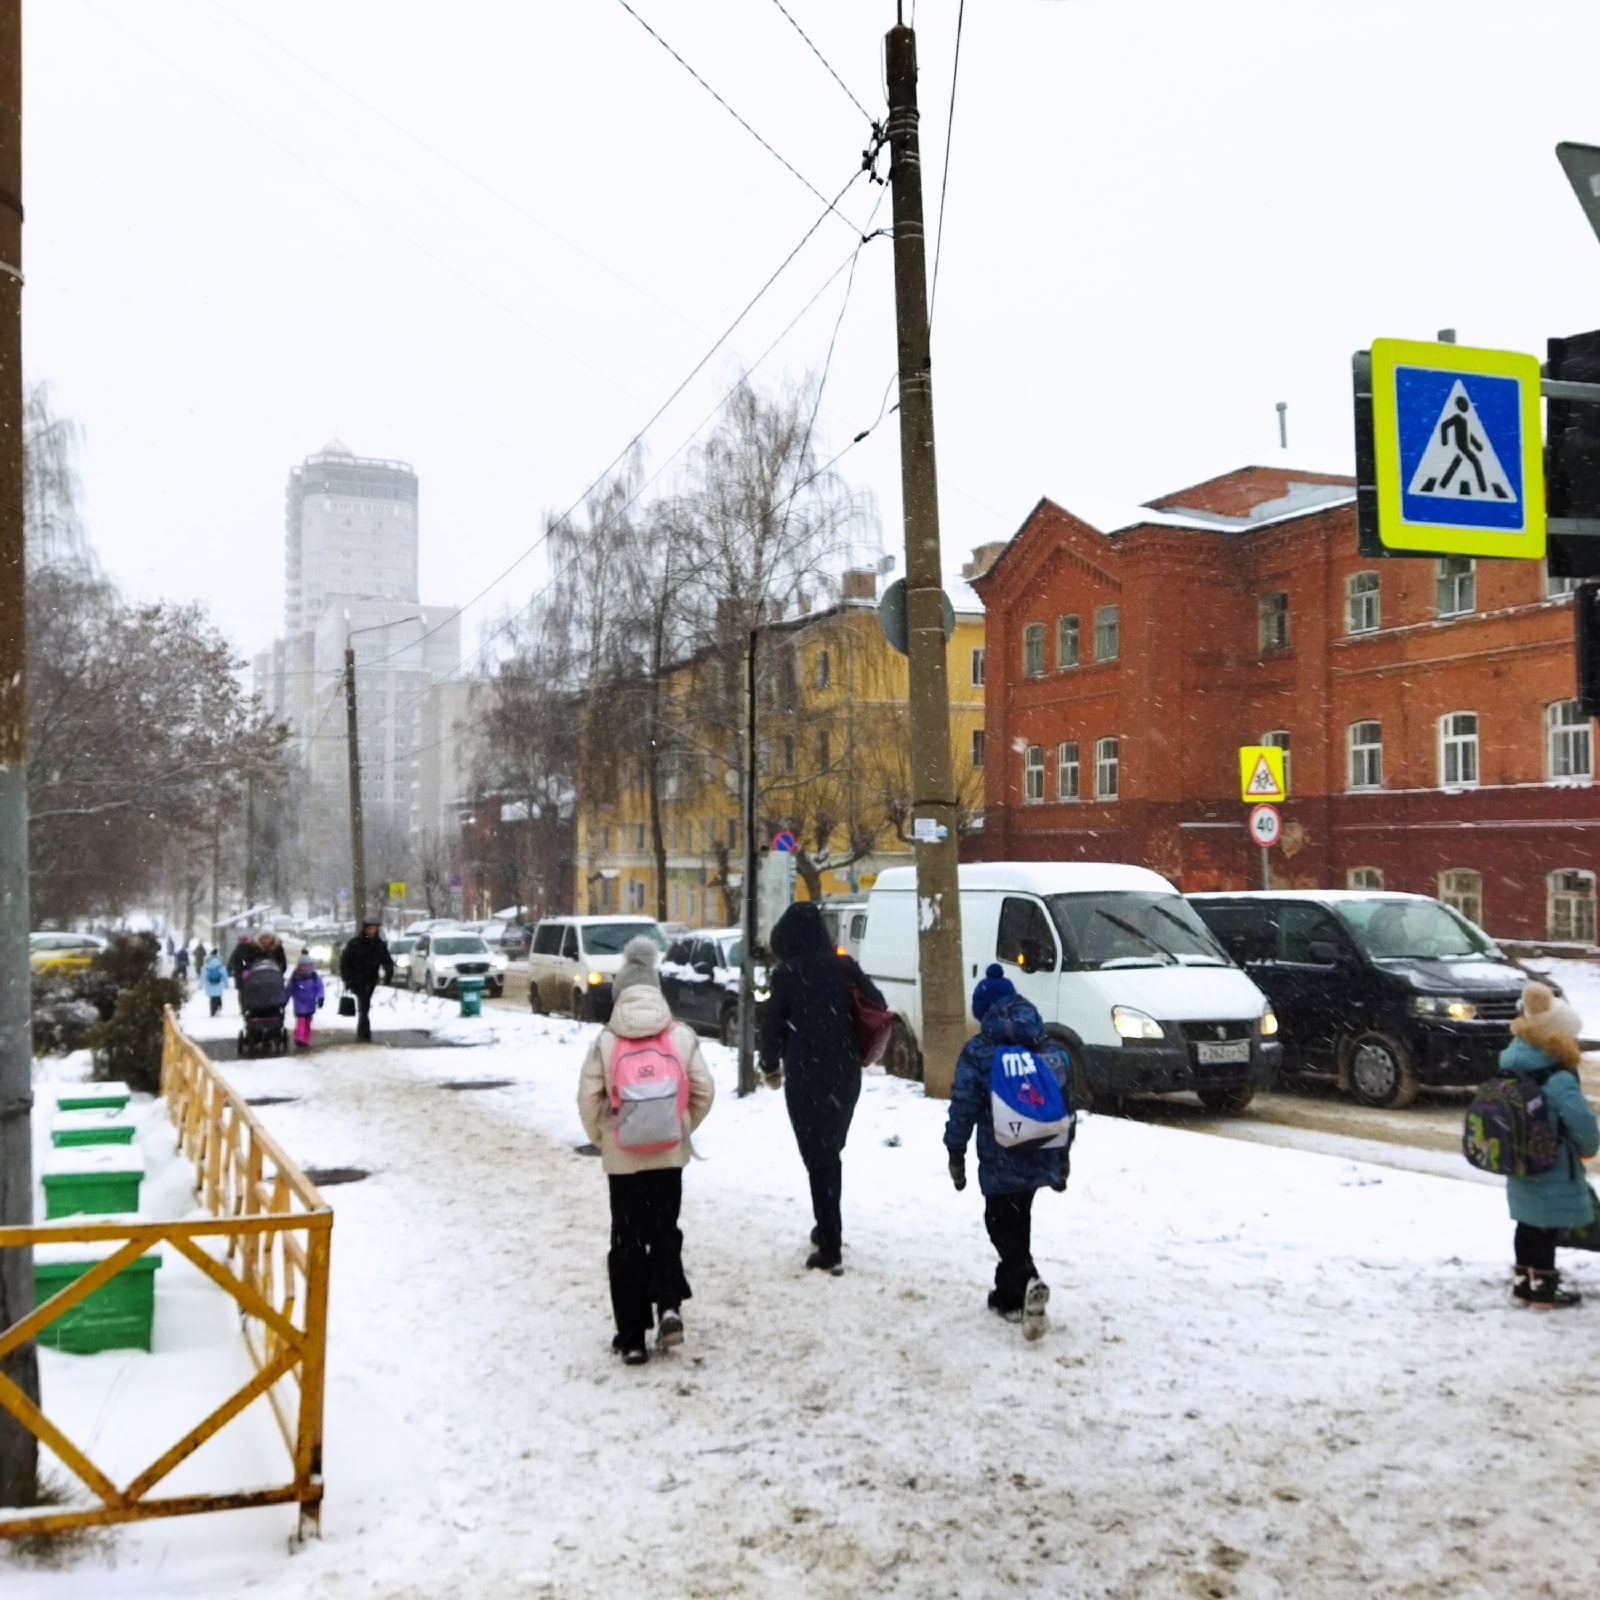 До -18 и снежно: опубликован прогноз погоды в Кирове на неделе